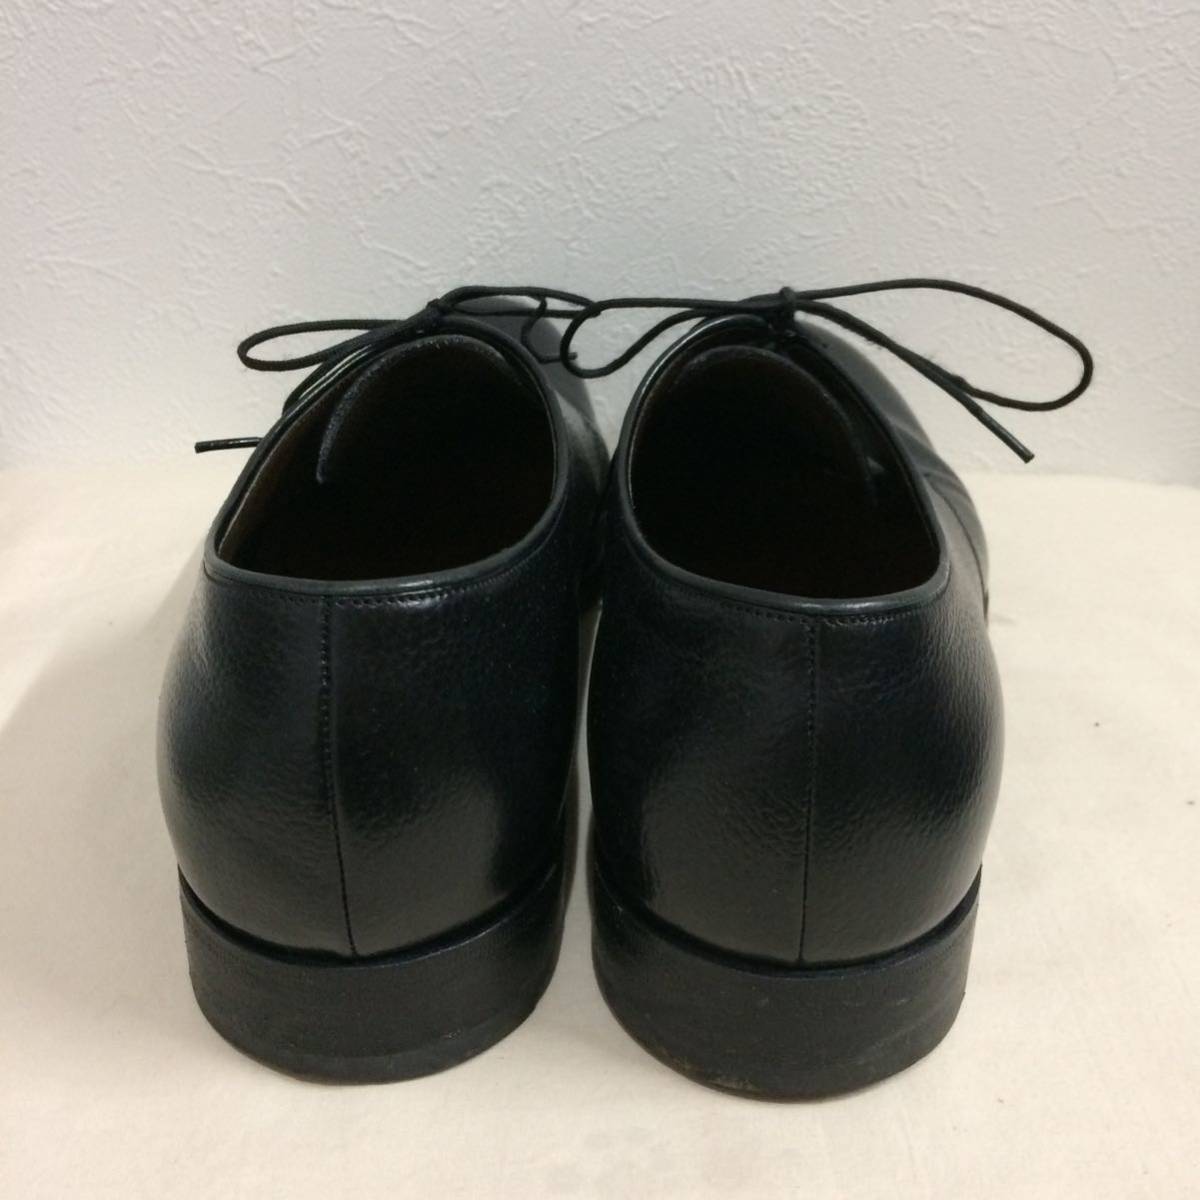  Vintage Jil Sander leather shoes black wrinkle leather Italy made 231222